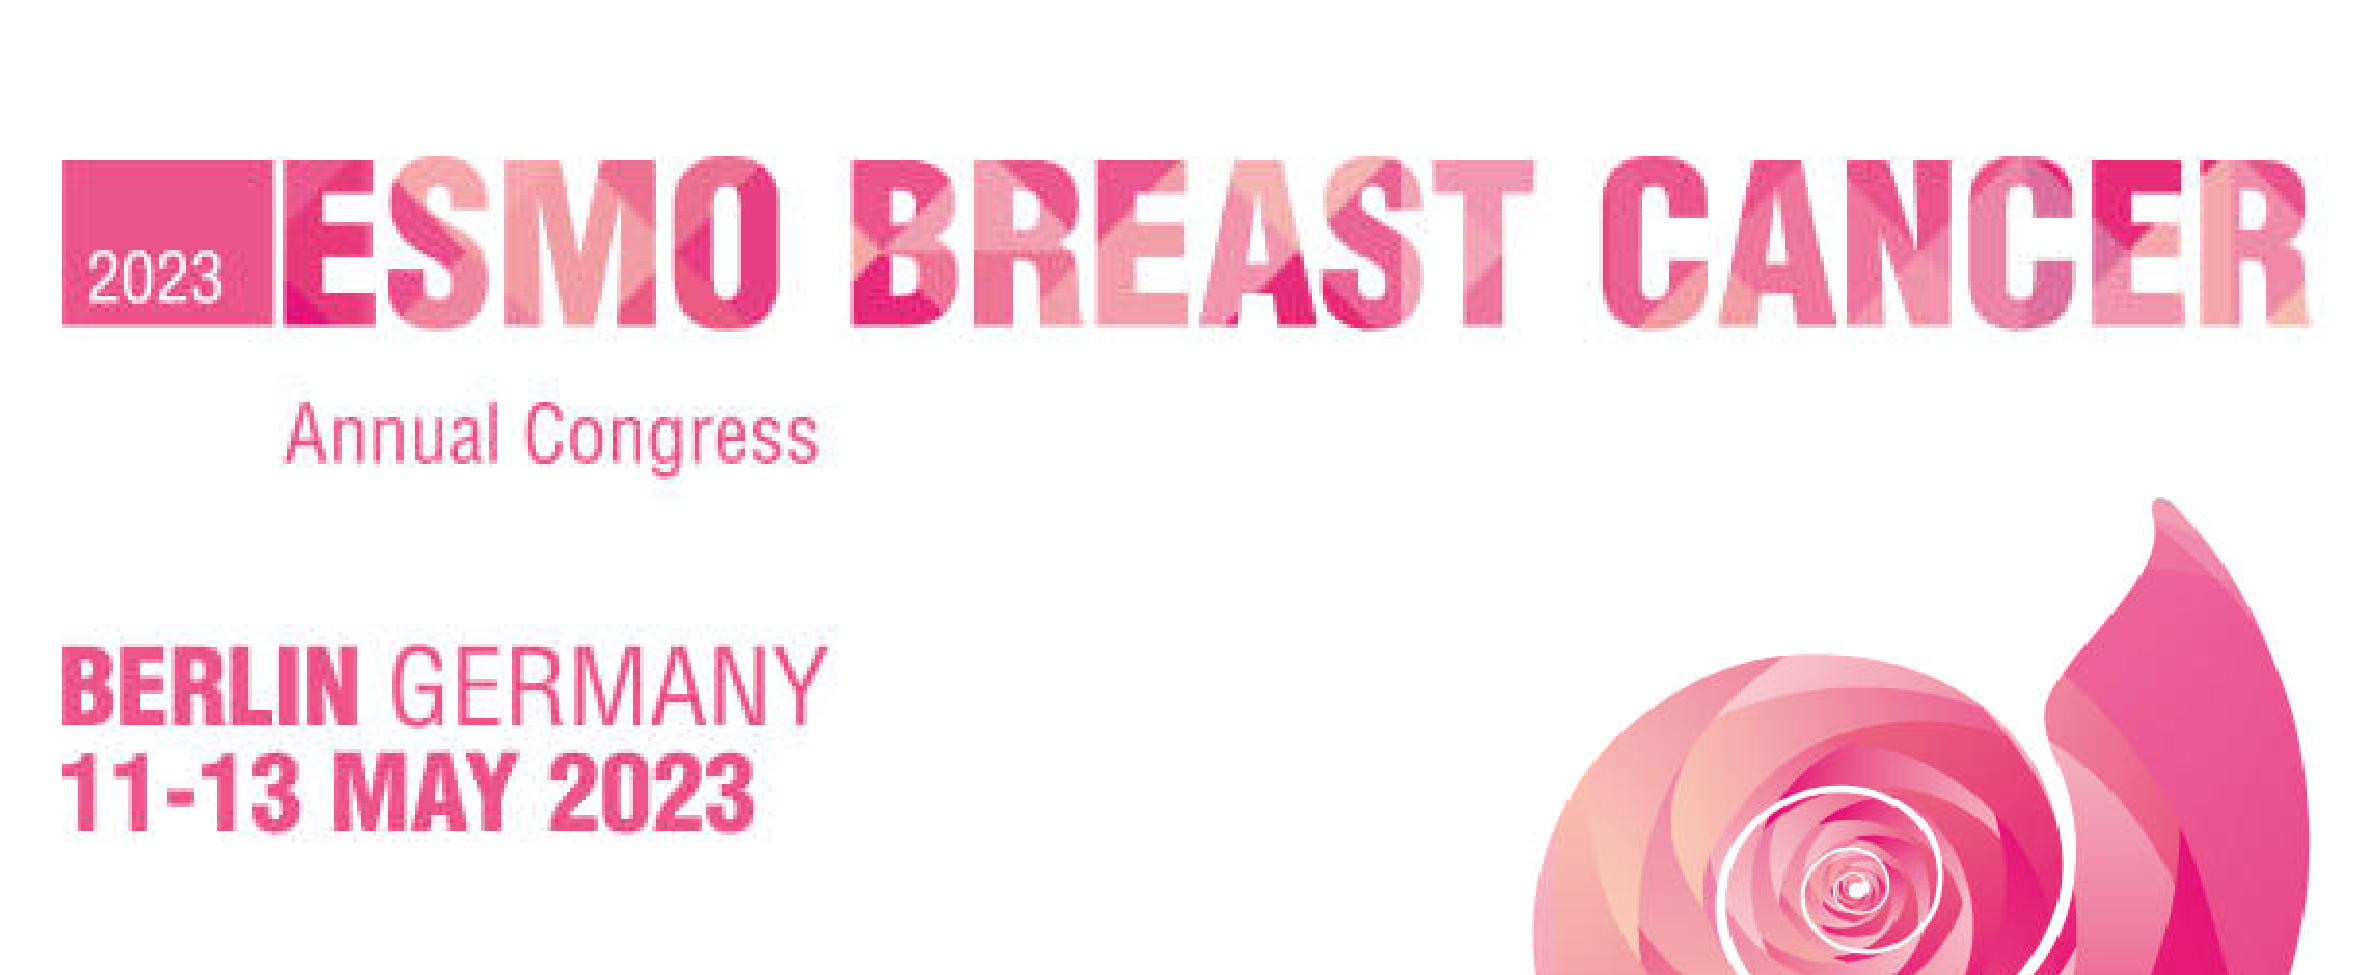 ESMO Breast Cancer Annual Congress 2023